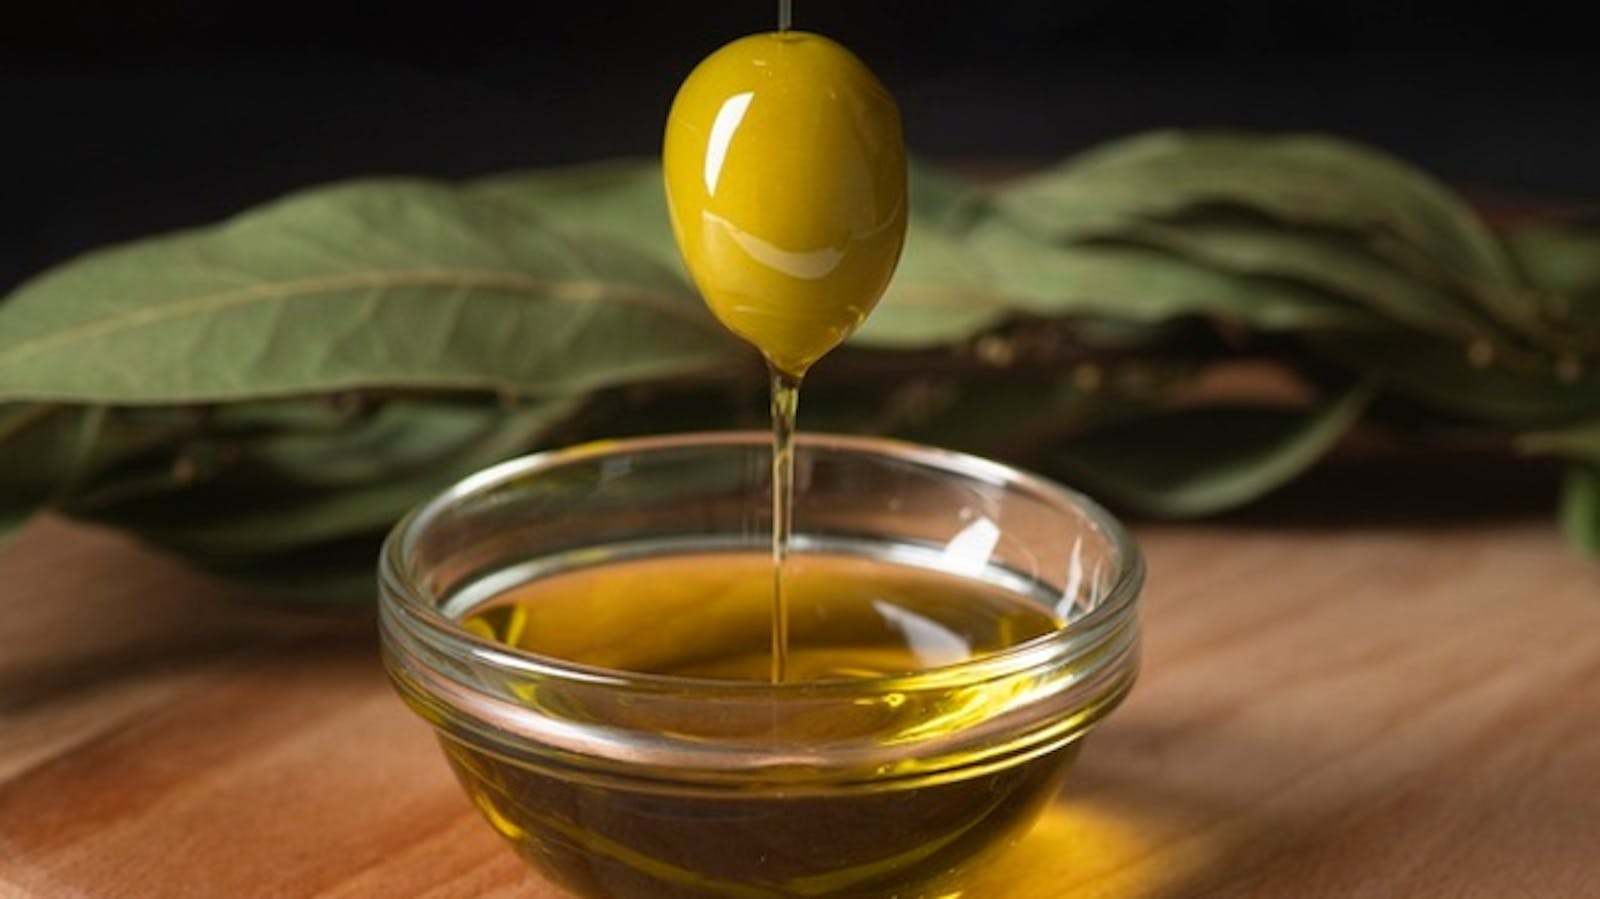 Olive e olio d'oliva